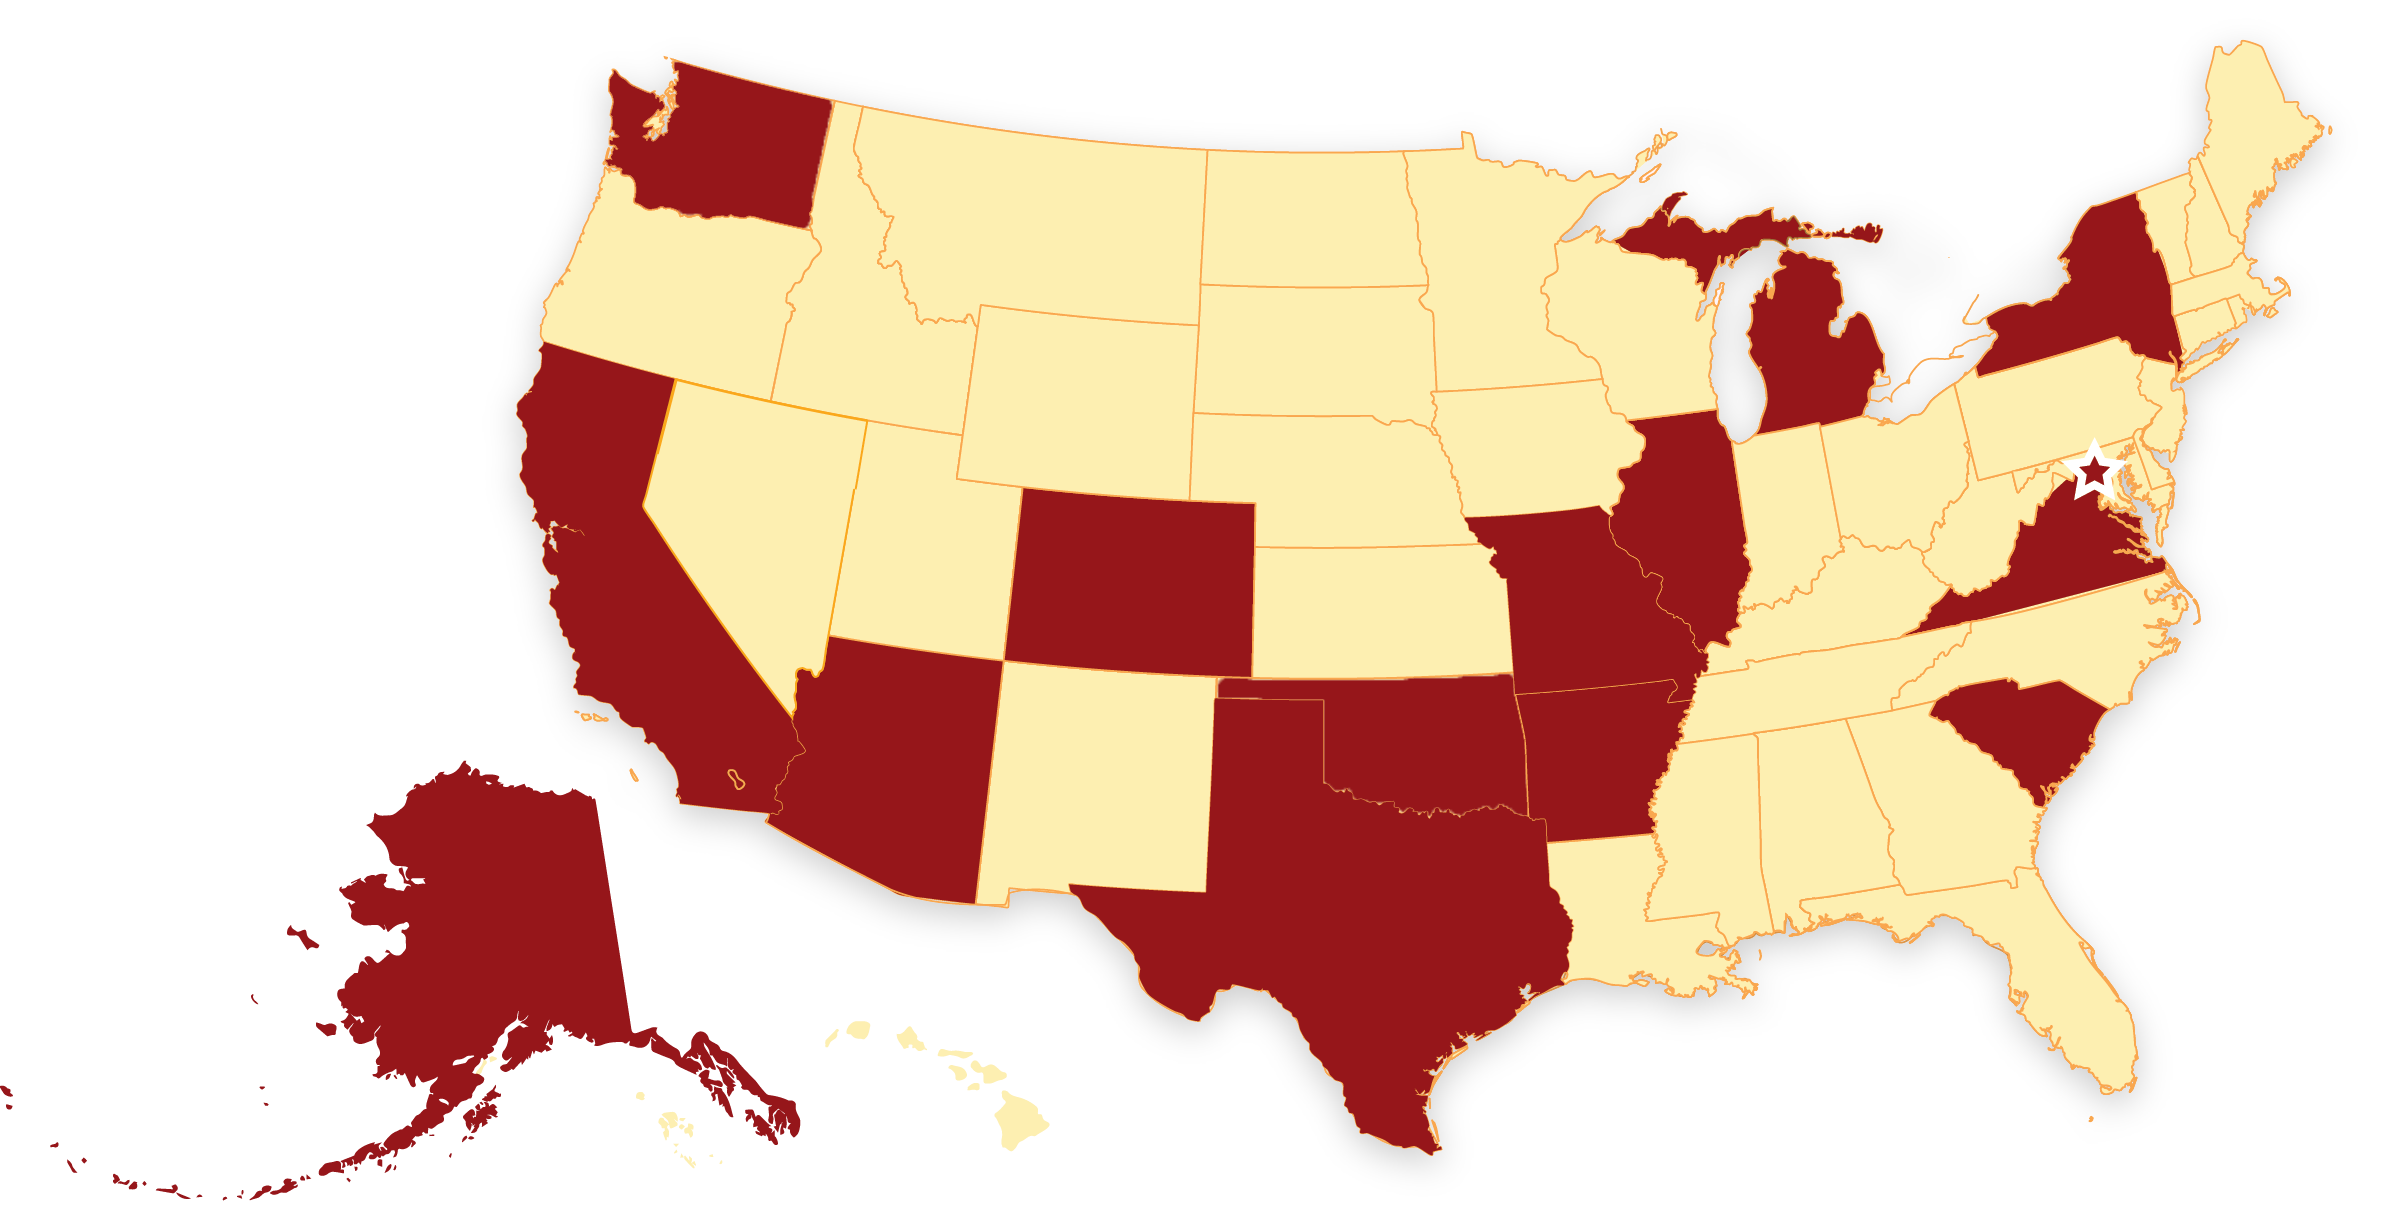 Yoga Alliance - United States advocacy efforts map